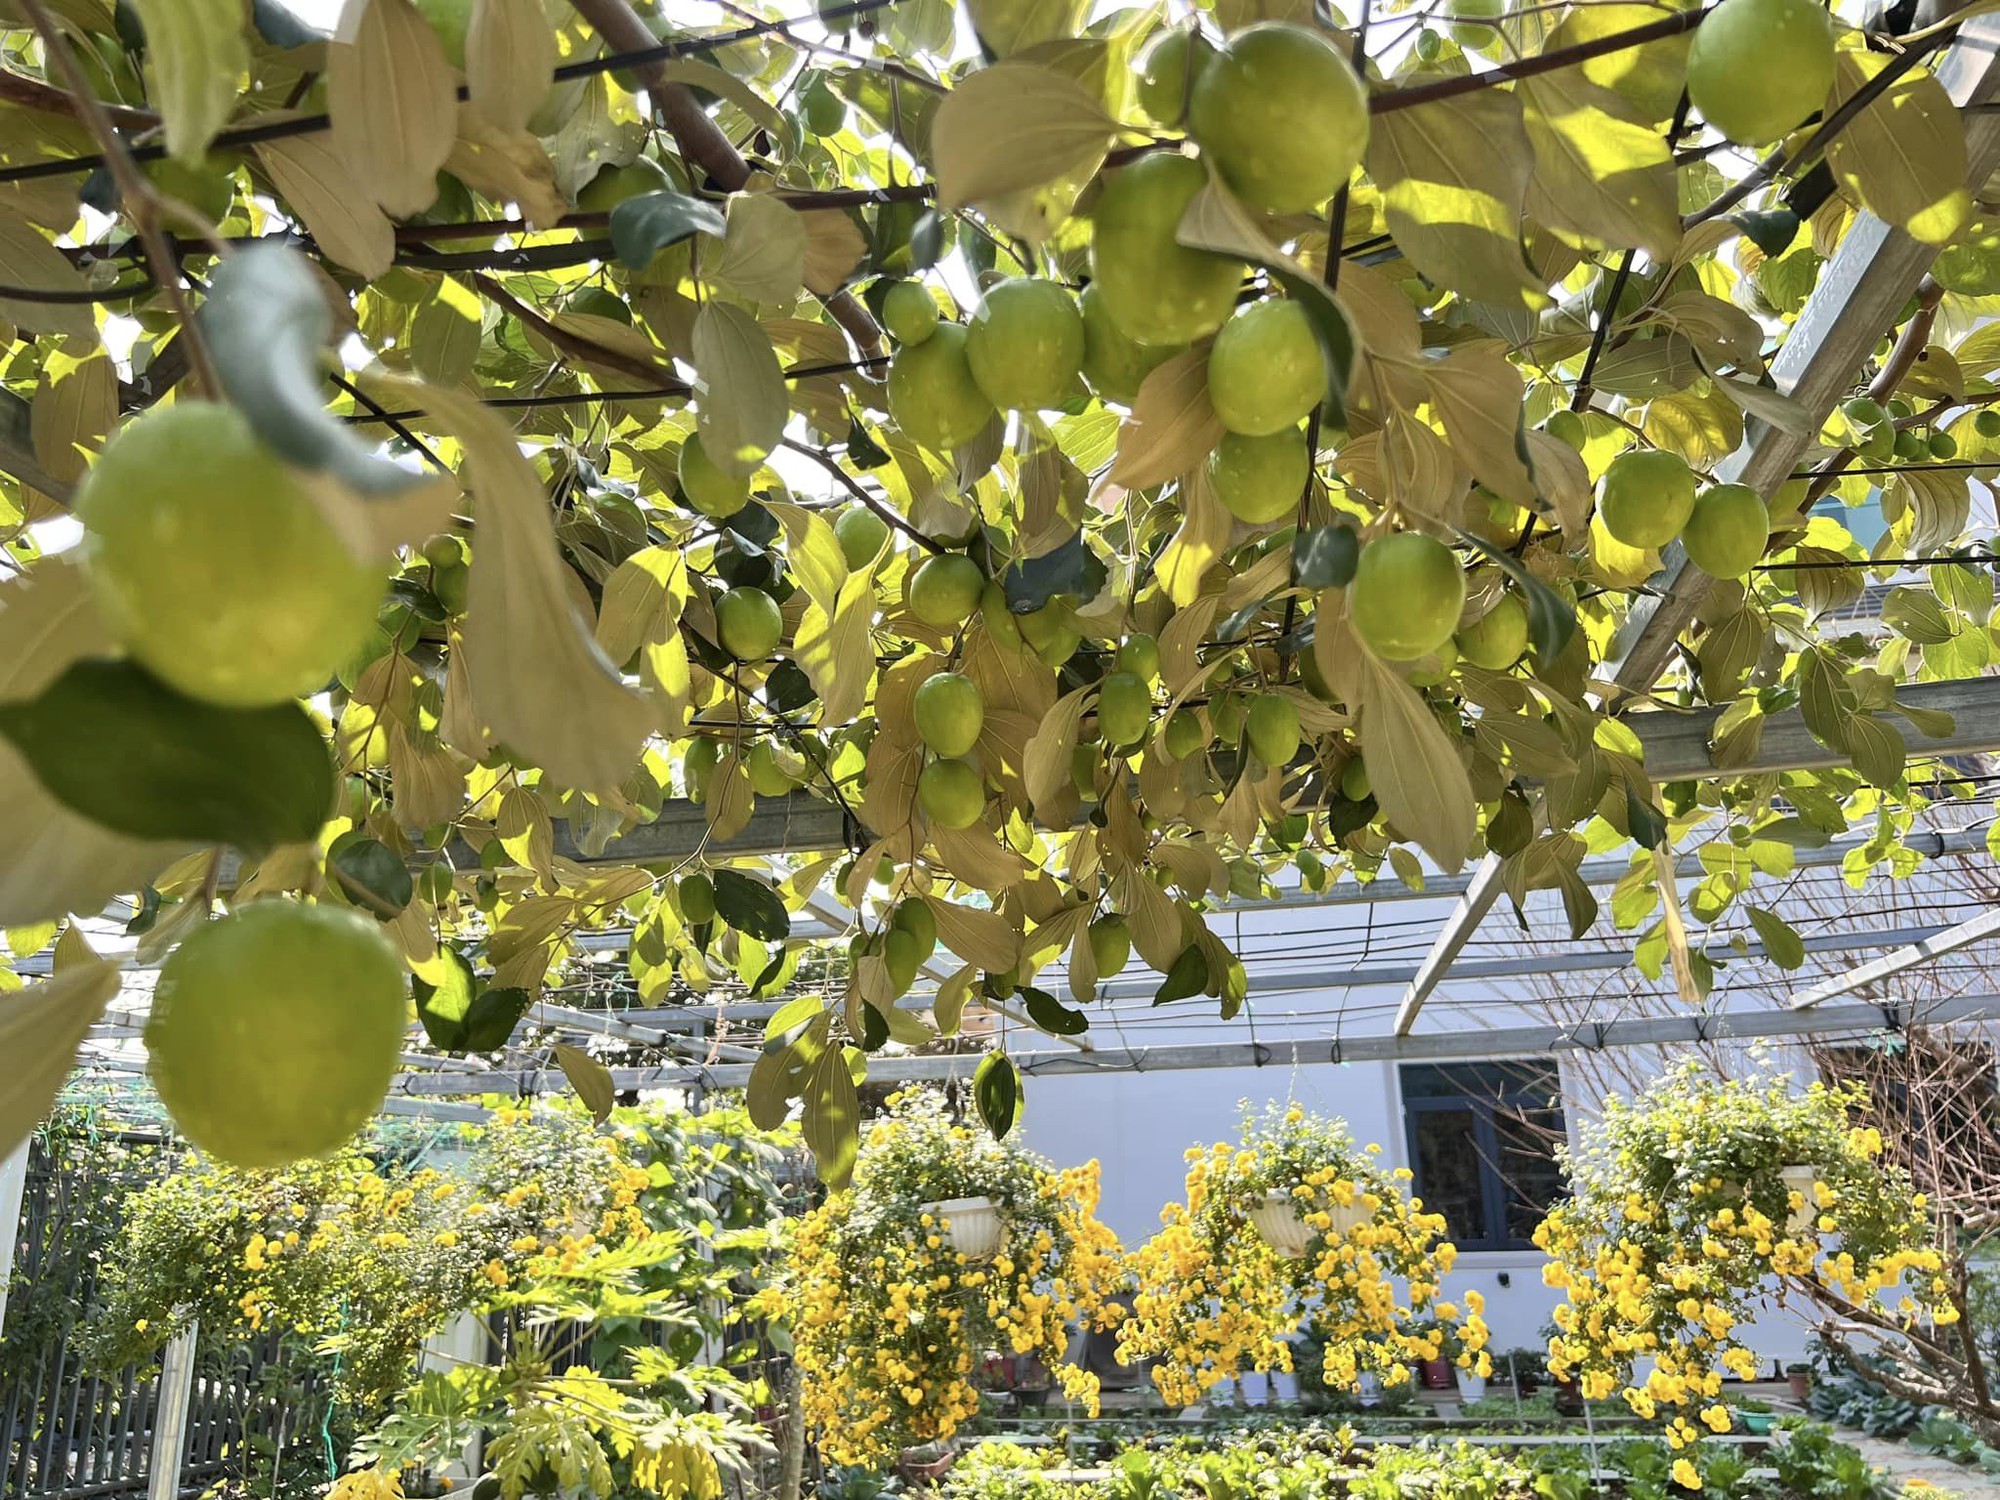 Khu vườn rộng 300m2 sum suê rau trái, mùa nào thức nấy, tươi tốt um tùm của mẹ đảm 4 con ở Quảng Ninh- Ảnh 6.